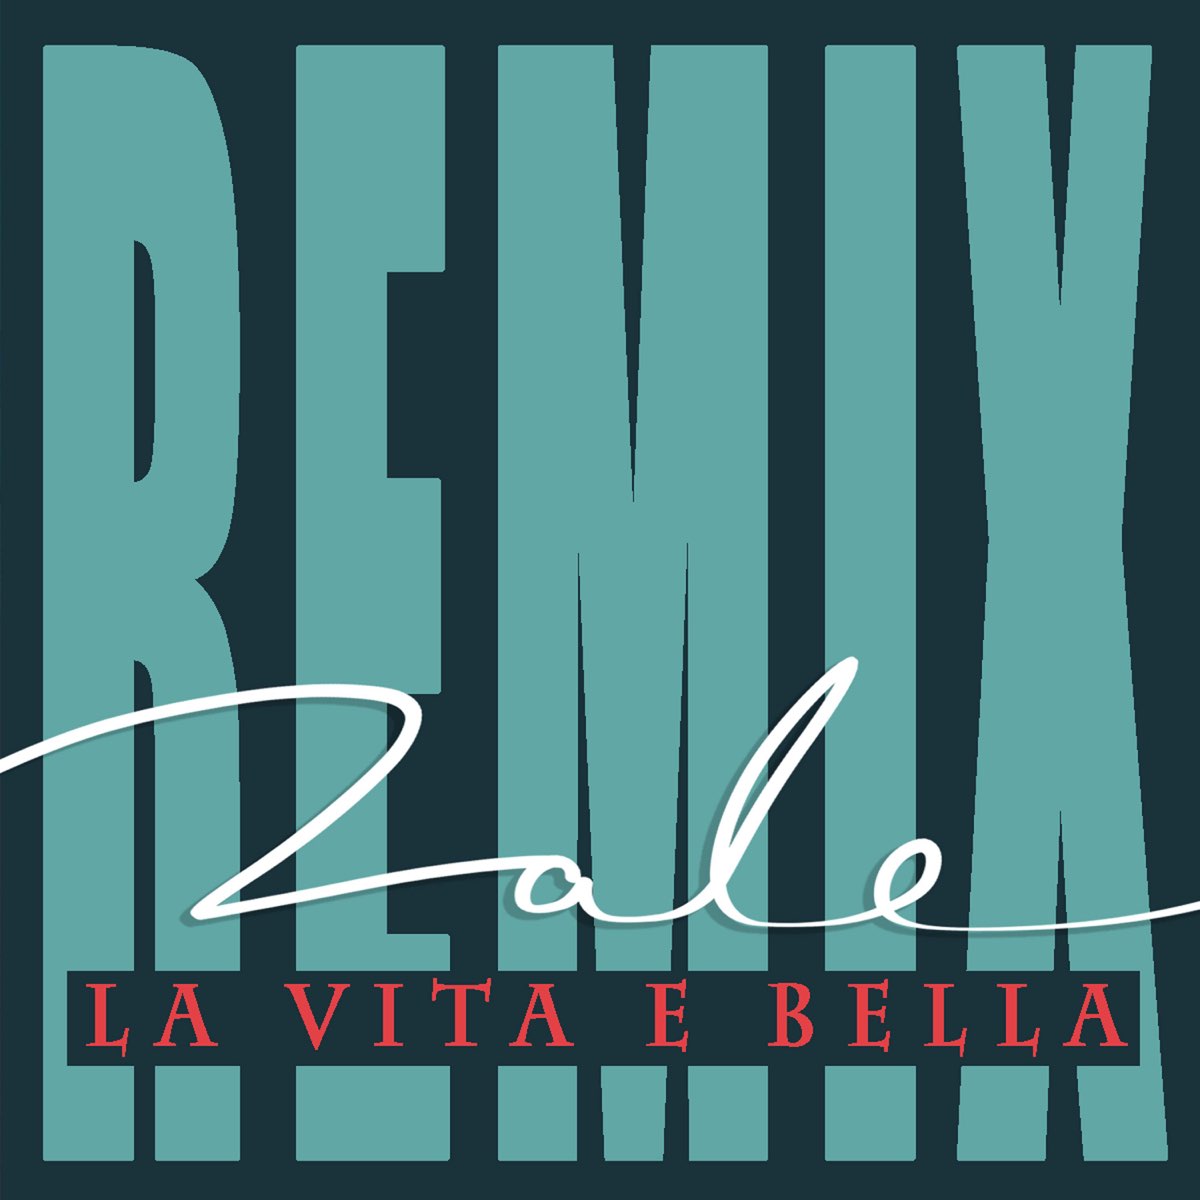 Roe pette bella. Обои на телефон la Vita e Bella. Bella_Remix. La Vita e Bella на обои телефона черный фон.